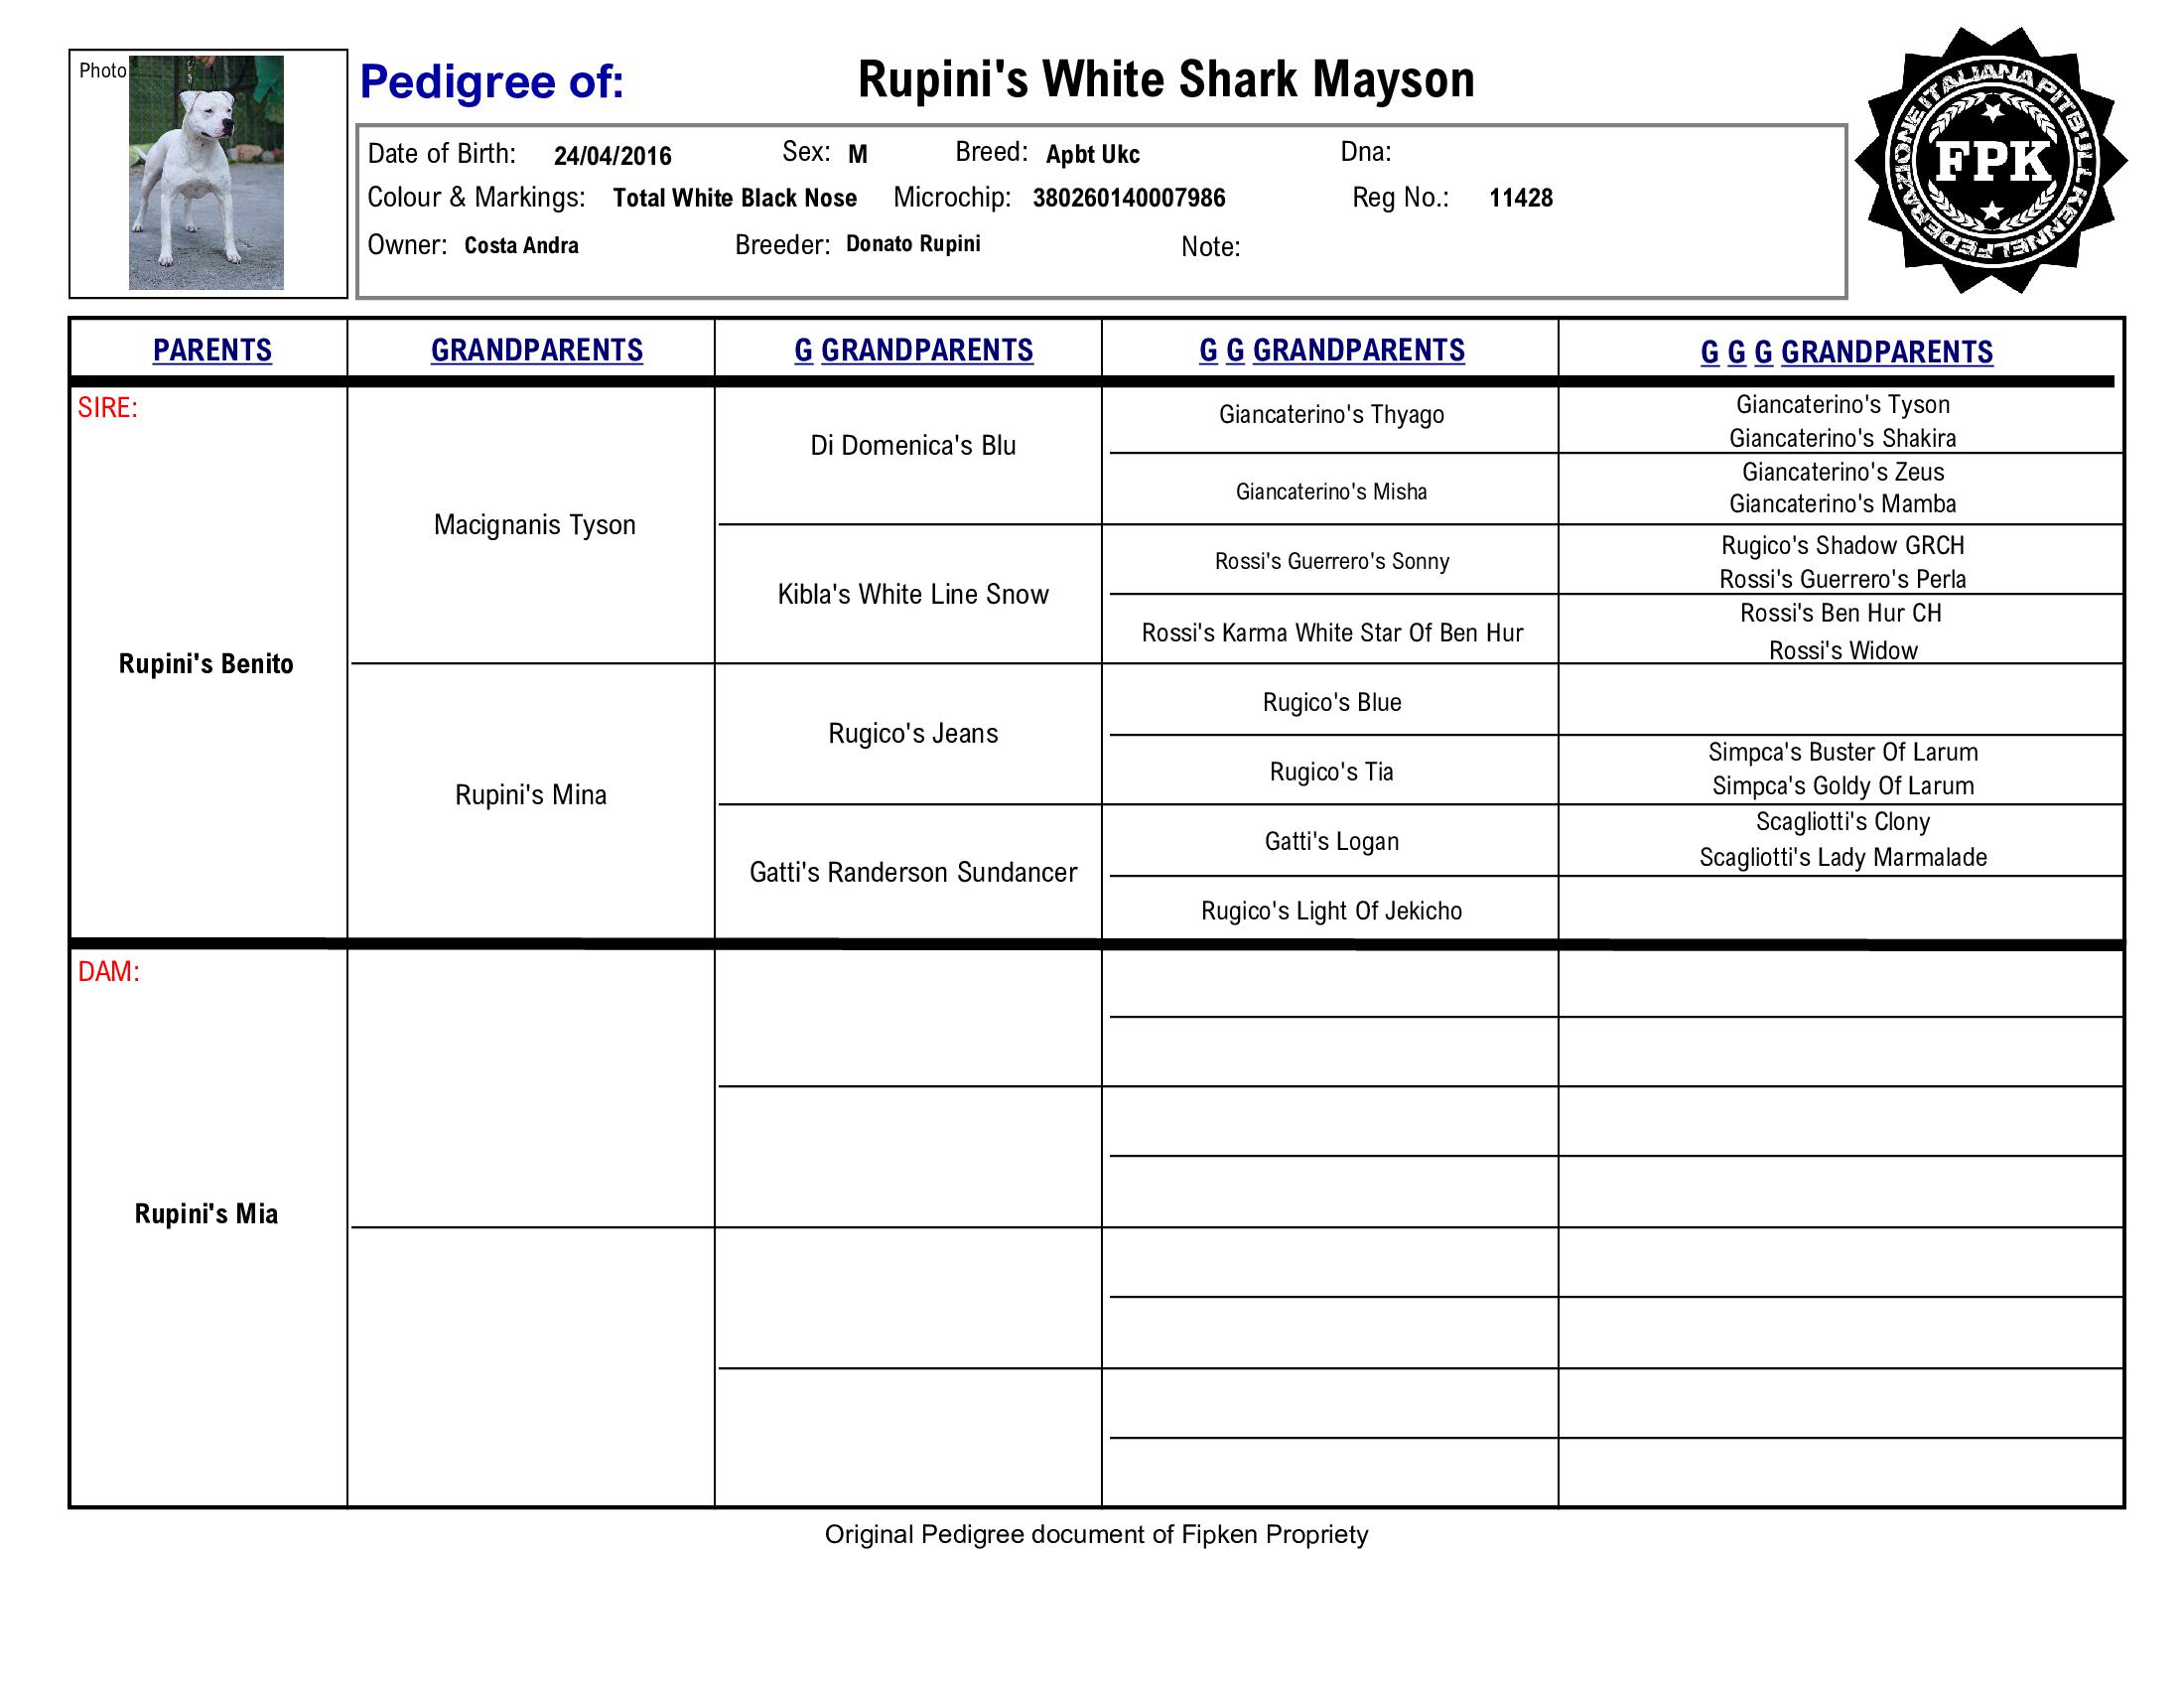 Rupini's White Shark Mayson